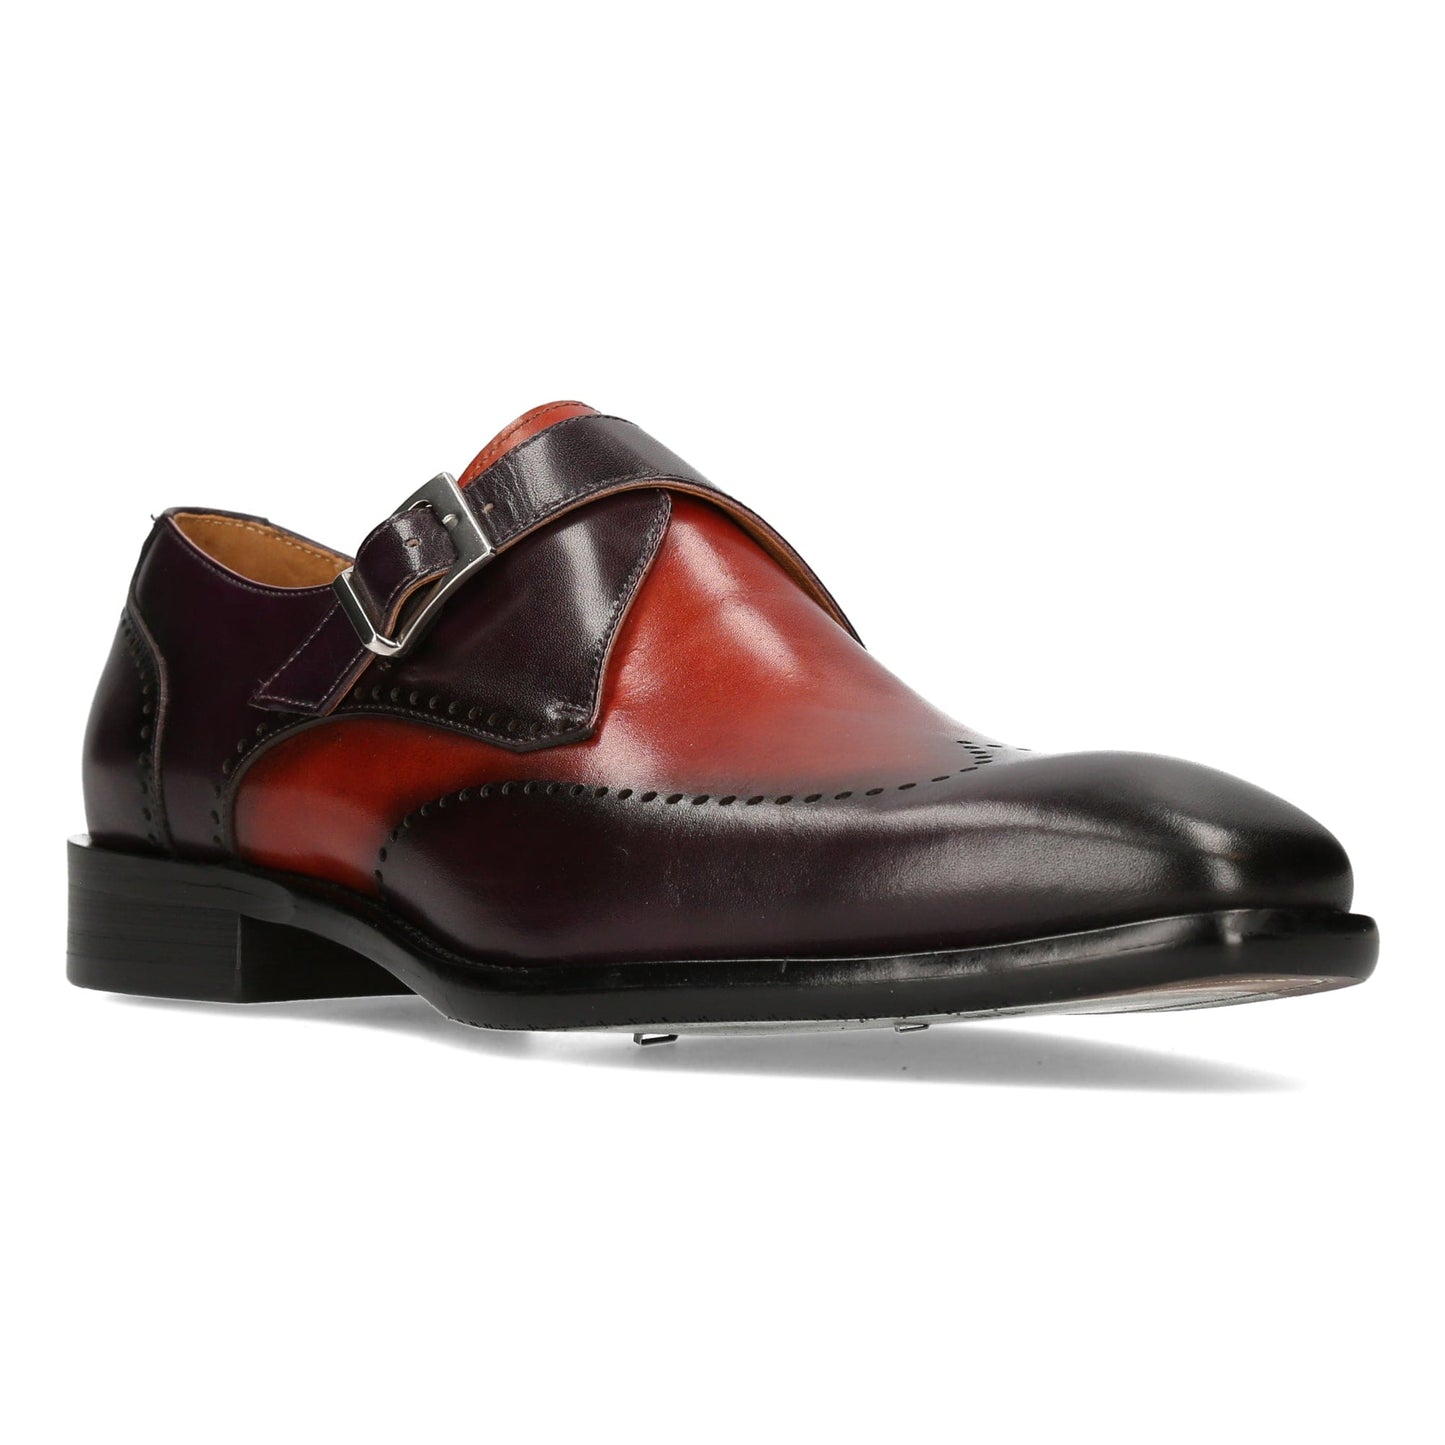 lorenzo conti gents footwear violet gents footwear £99 plus uk postage now £65.50